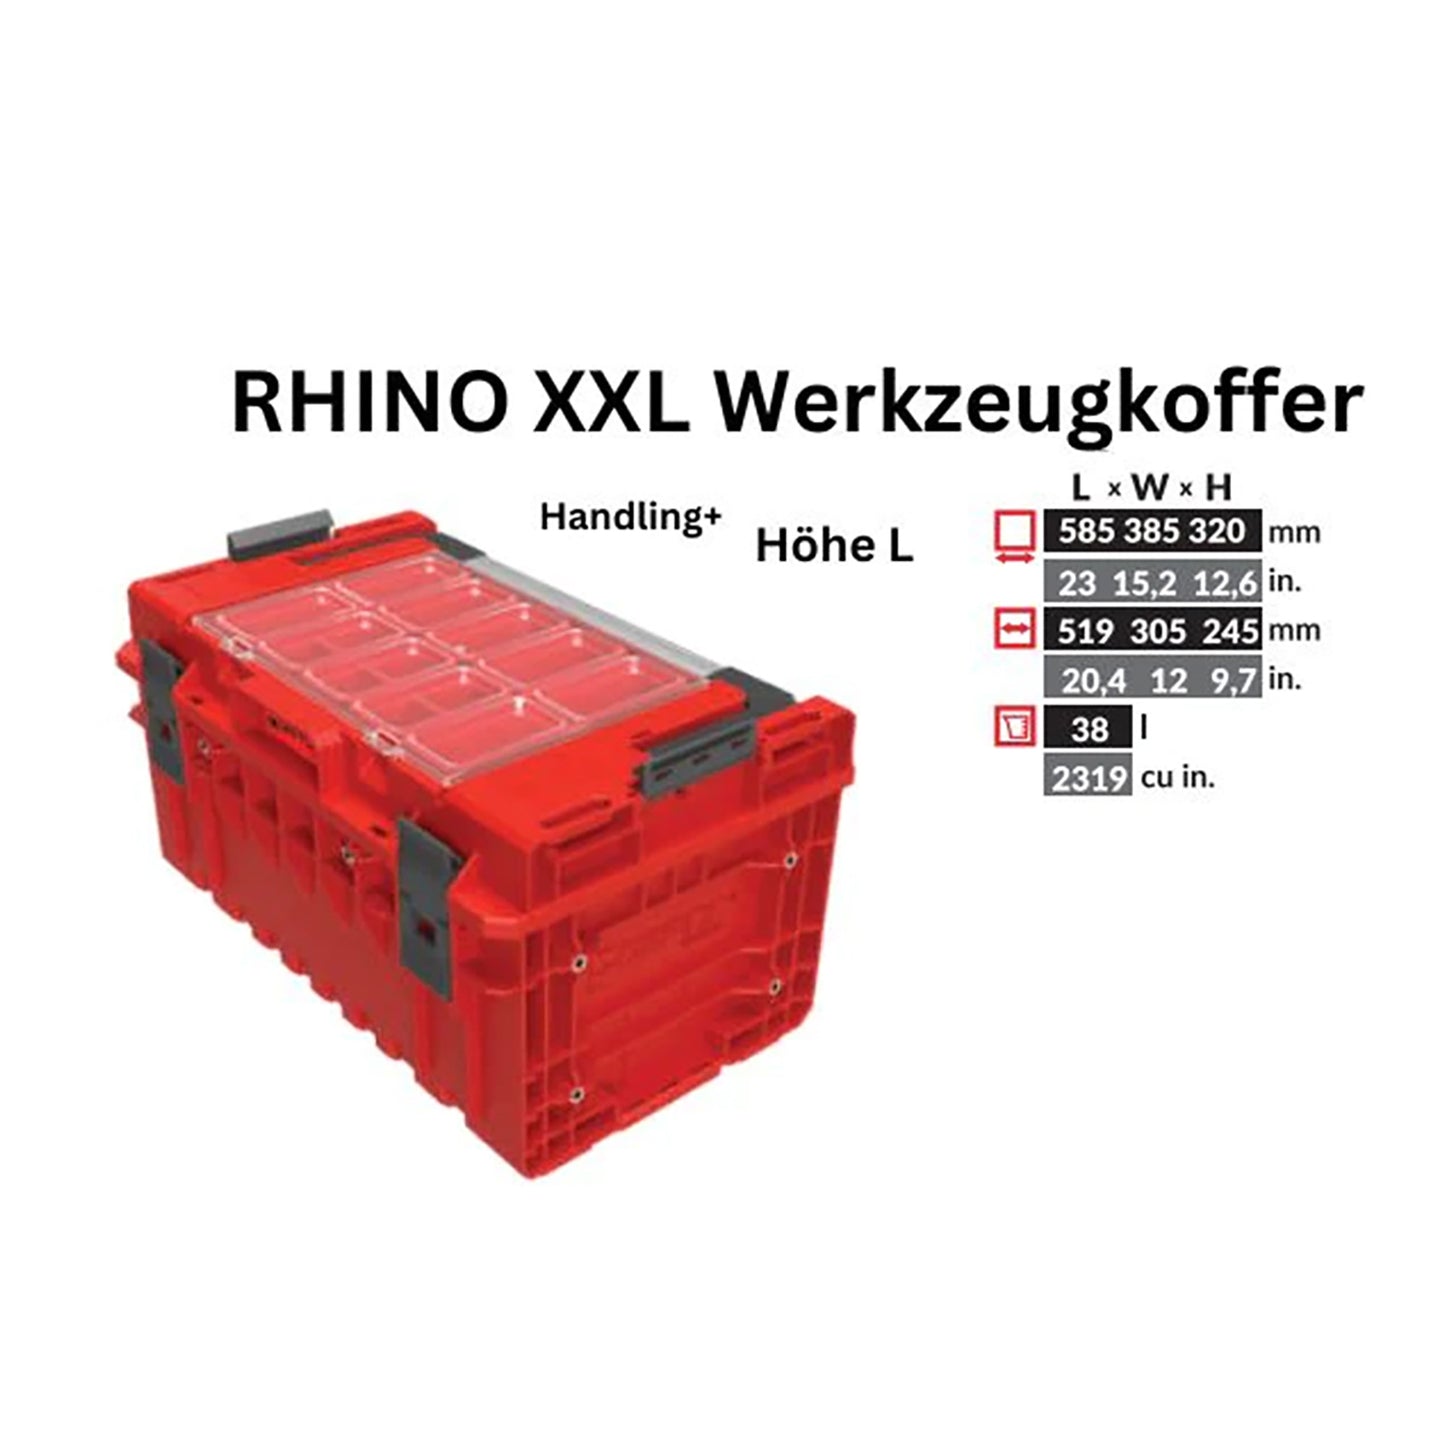 Toolbrothers RHINO XXL Werkzeugkoffer ULTRA Handling+ Höhe L Custom modularer Organizer 585 x 385 x 320 mm 38 l stapelbar IP66